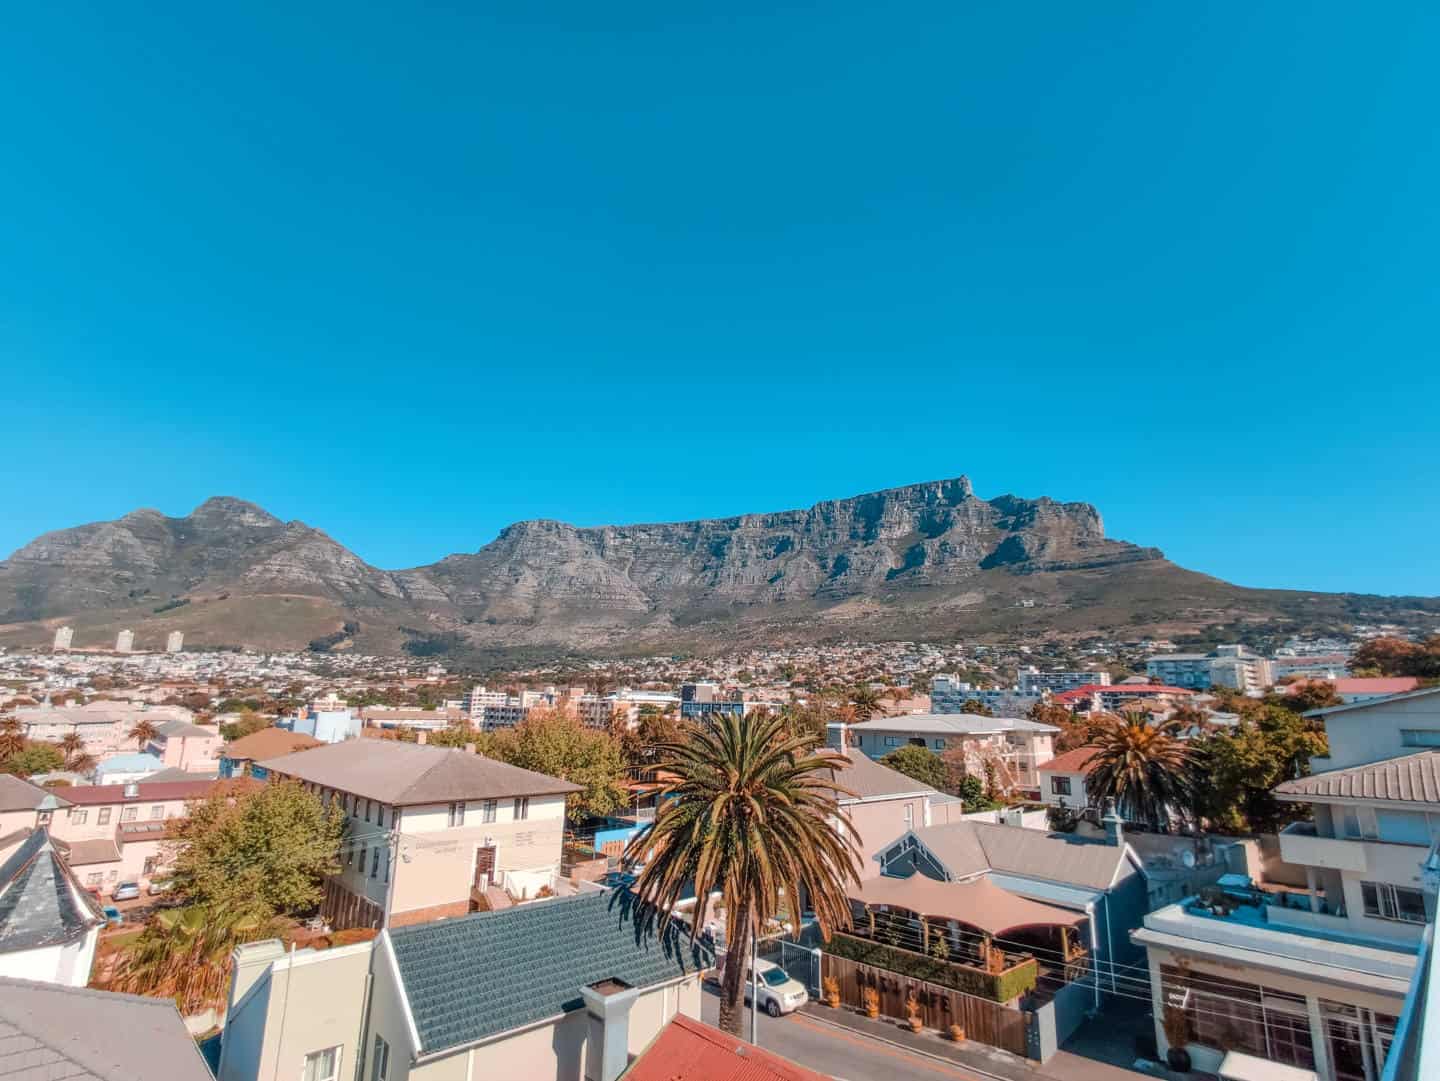 O que fazer em Cape Town - principais pontos turísticos, atrações e passeios, com preços